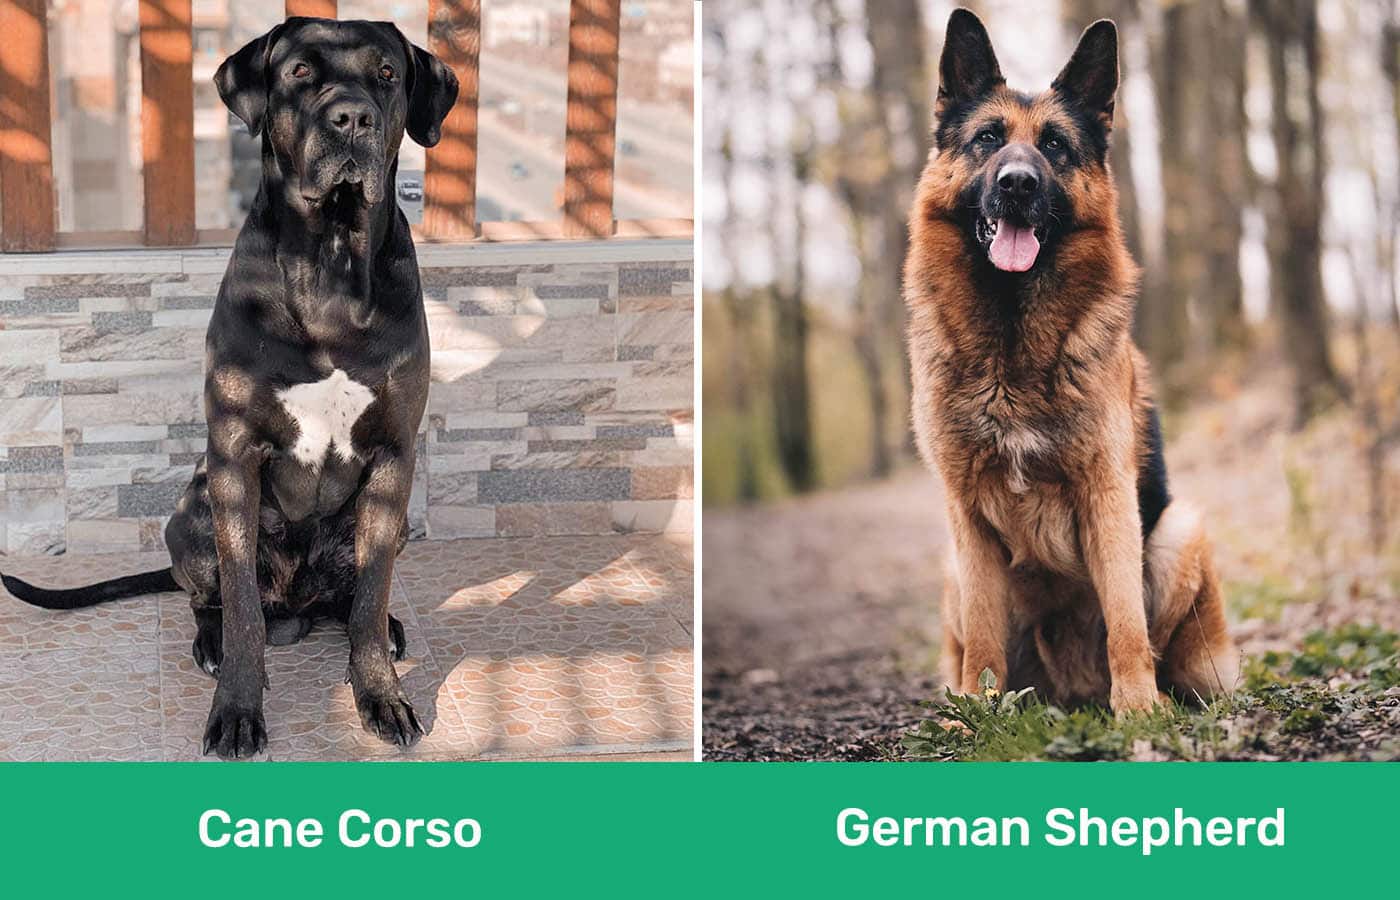 Cane Corso vs German Shepherd side by side